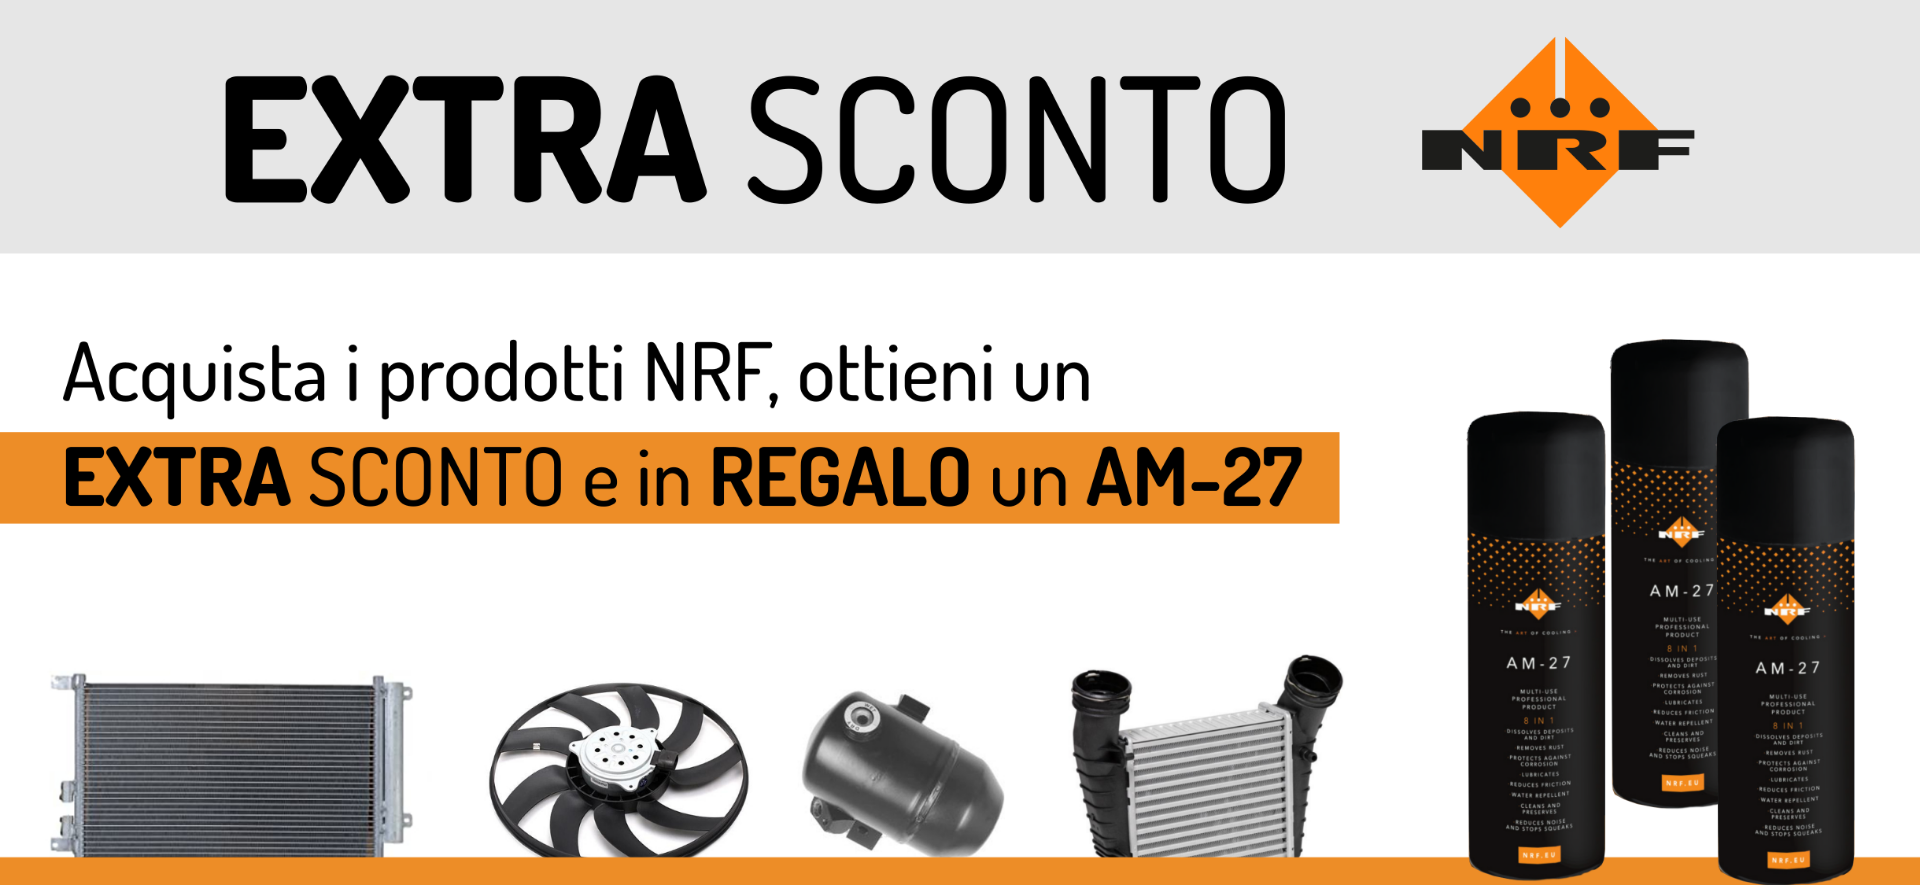 Promozione ricambi NRF - Ariap ricambi Sicilia